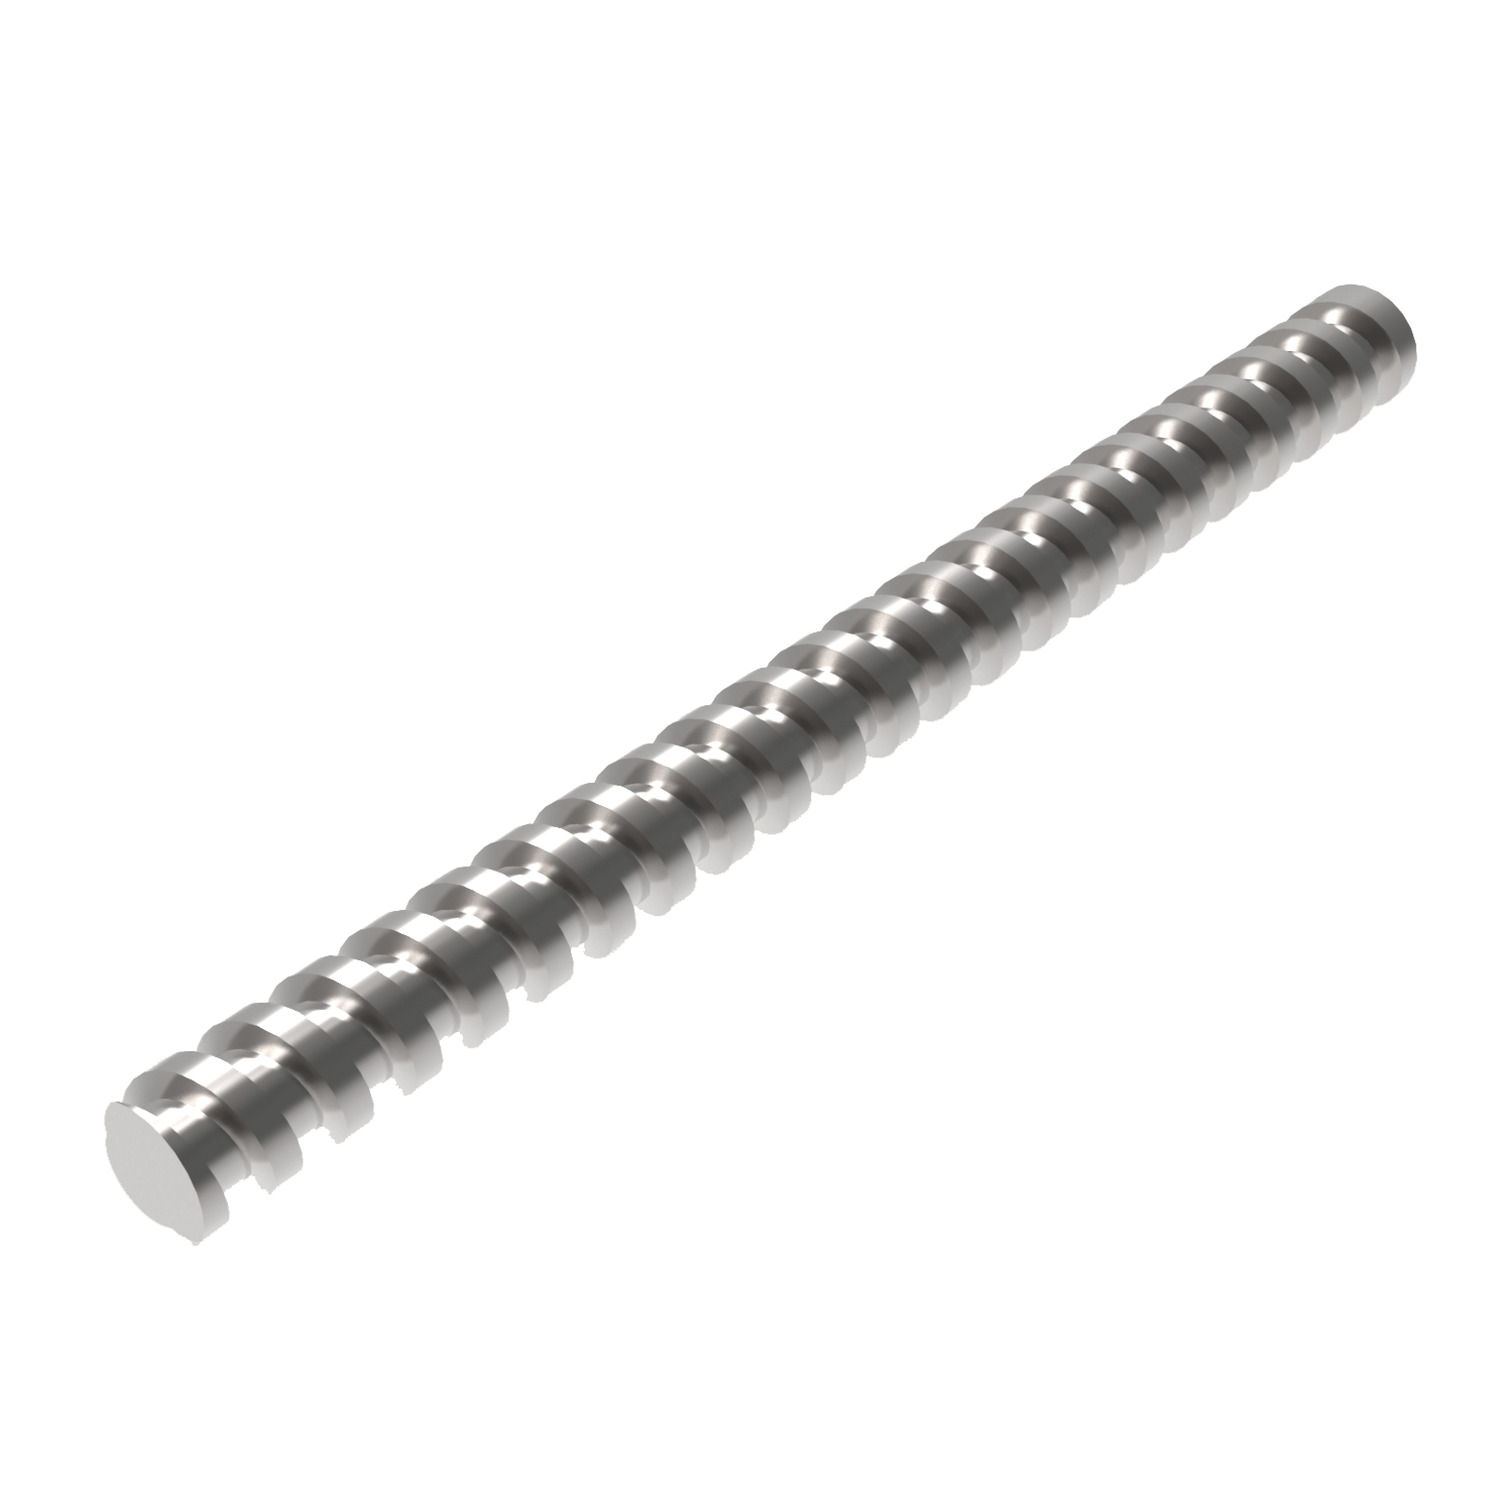 L1379.06 - Ø 6 Miniature Rolled Ball Screw